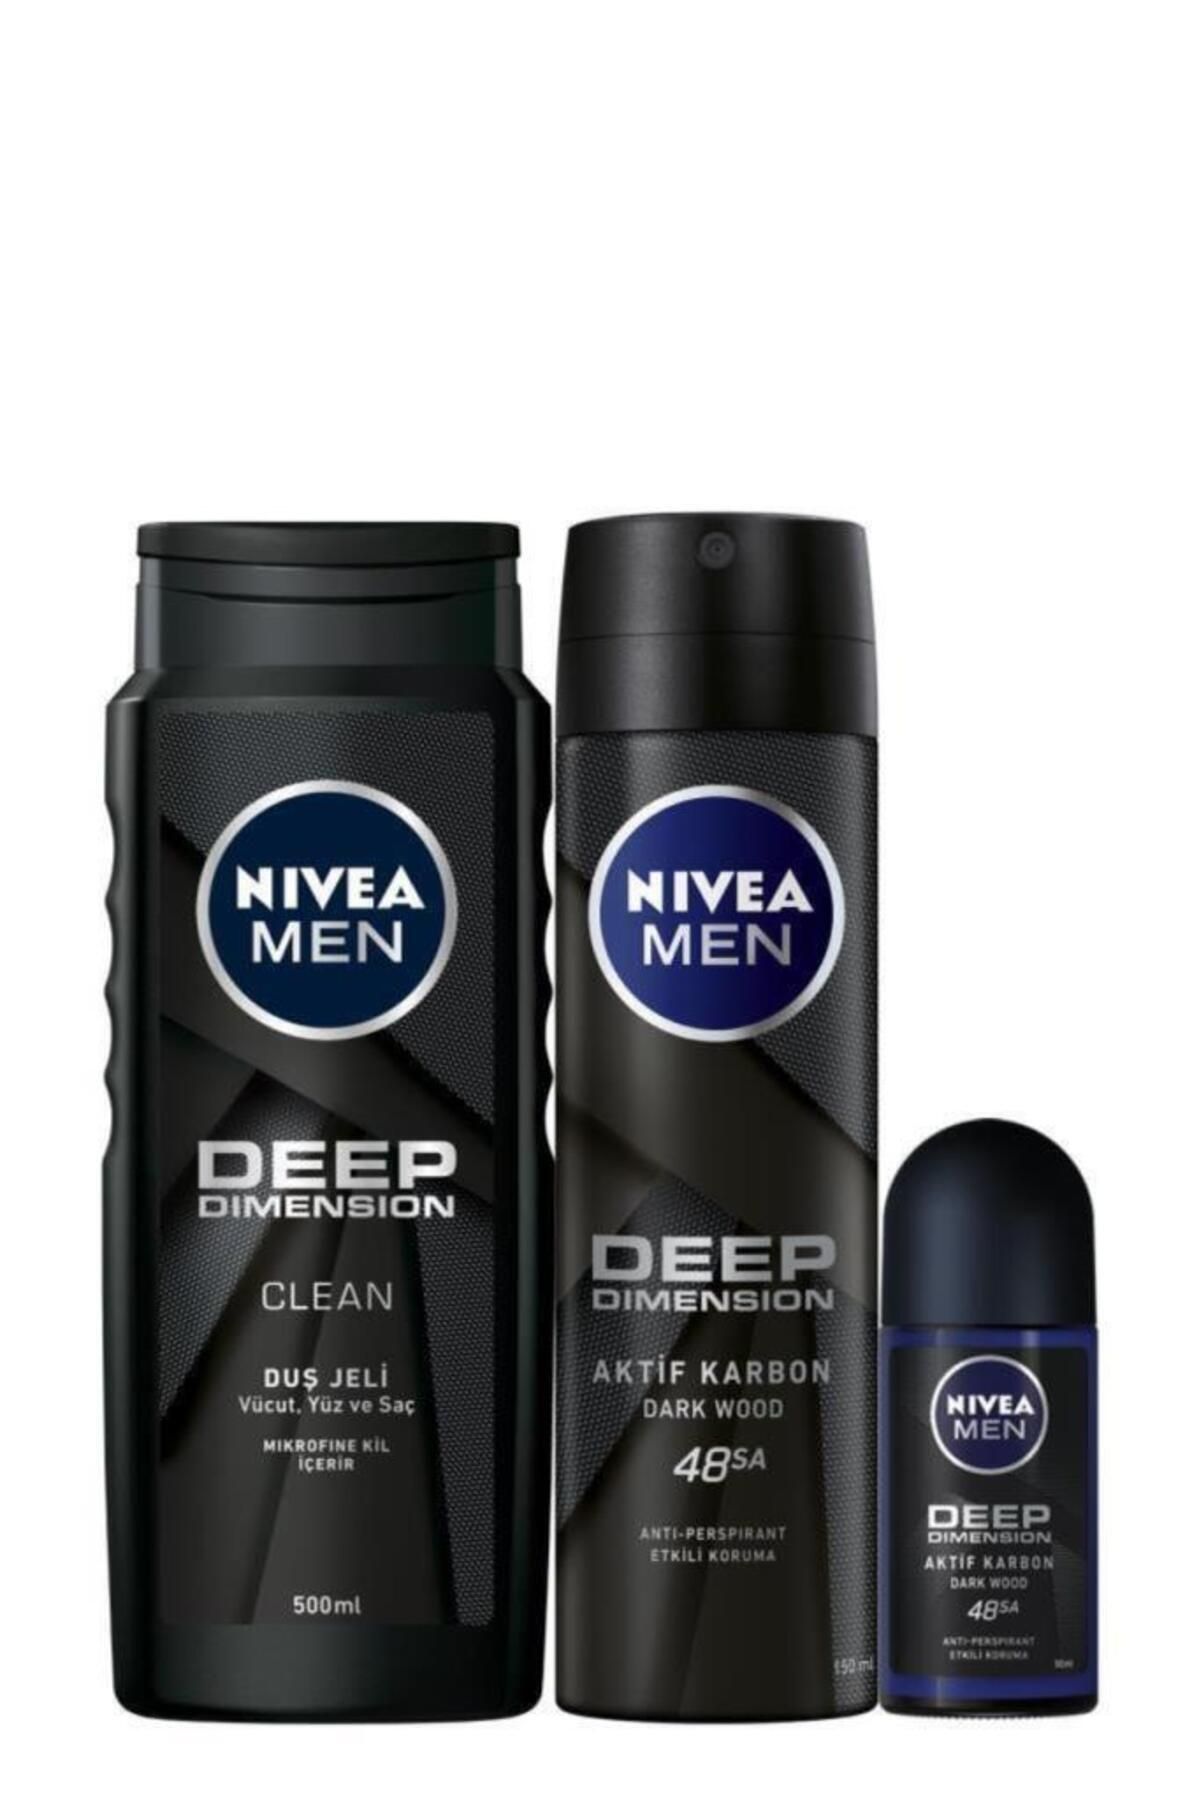 NIVEA Men Deep Dimension Erkek Kişisel Bakım Seti,duş Jeli 500 Ml,deodorant 150 Ml,roll-on 50 ml